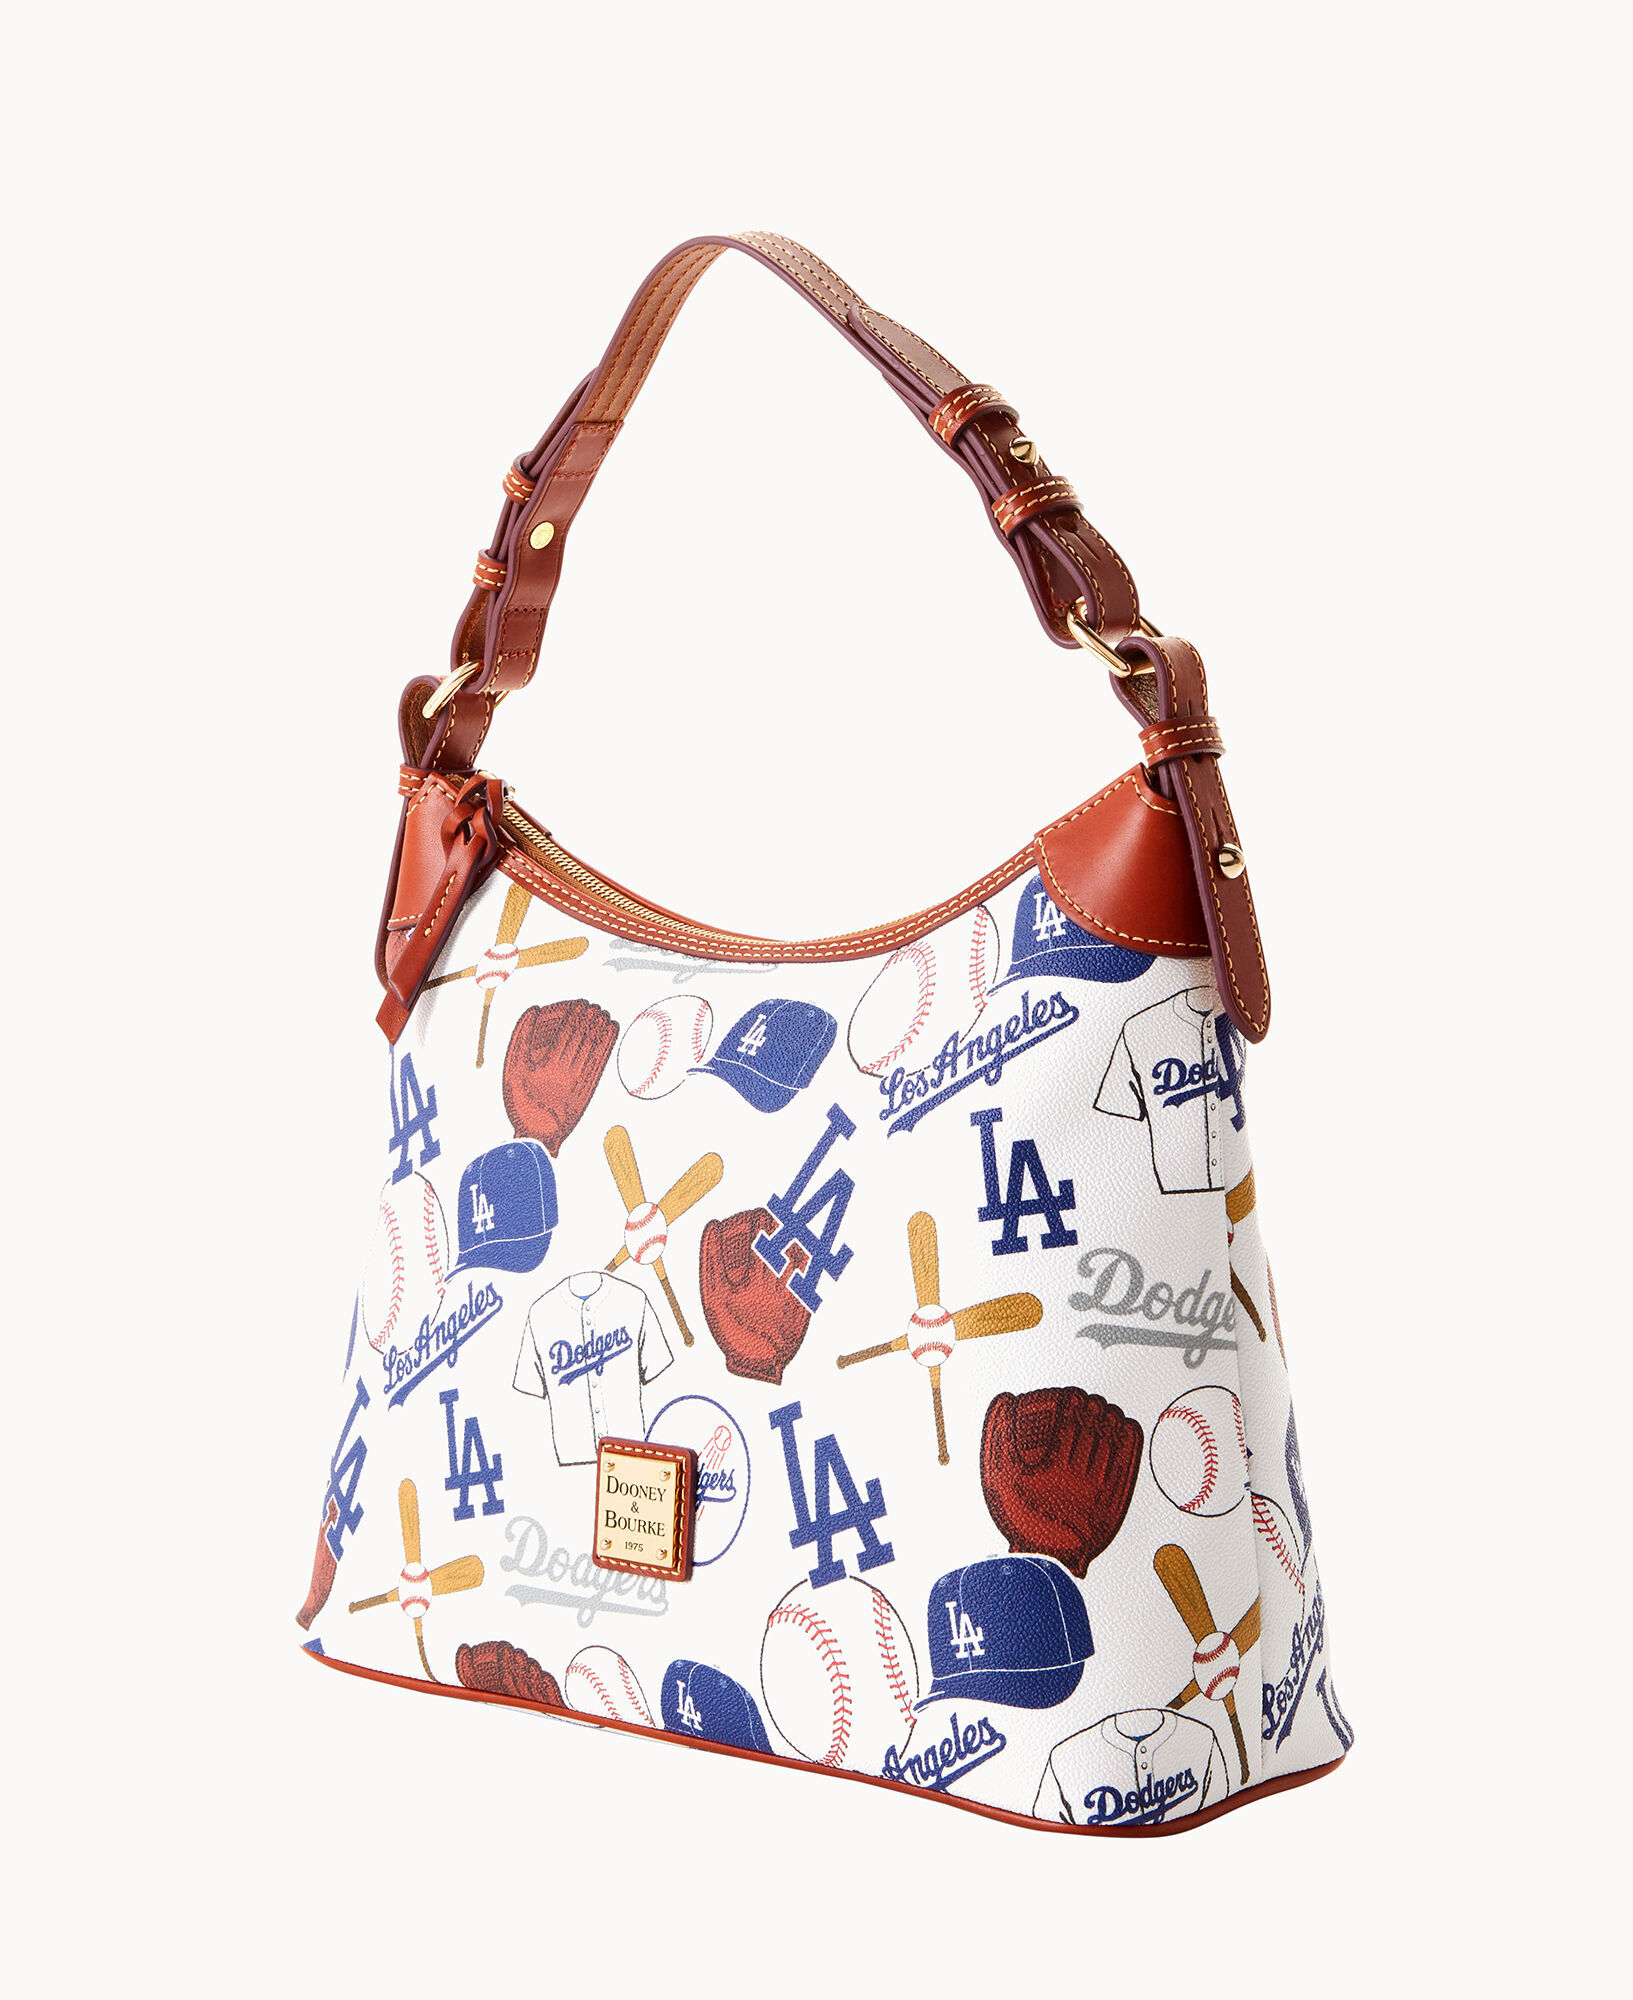 Dooney & Bourke MLB Los Angeles Dodgers Large Slim Crossbody Shoulder Bag